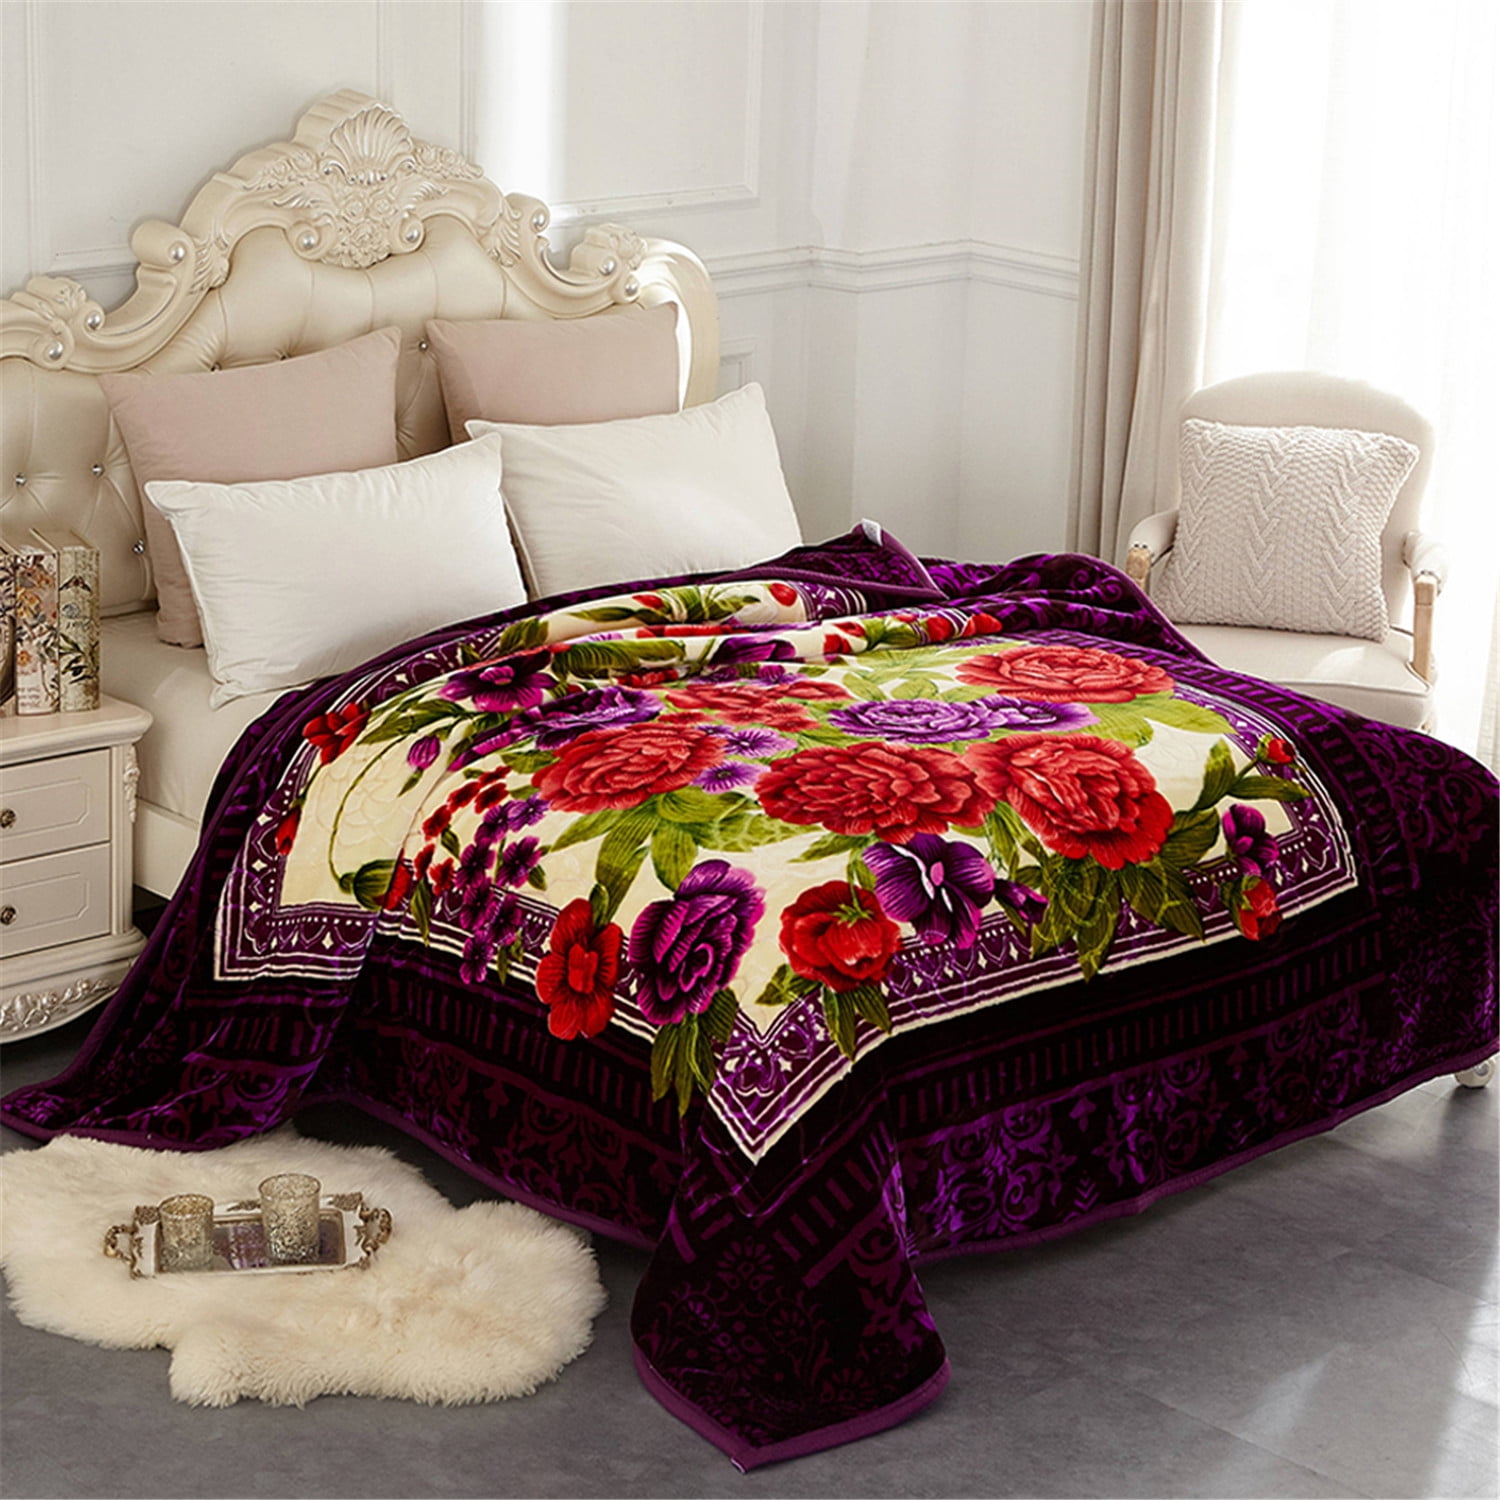 Utopia Bedding Fleece Blanket King Size Chocolate Soft Warm Bed Blanket Plush B 